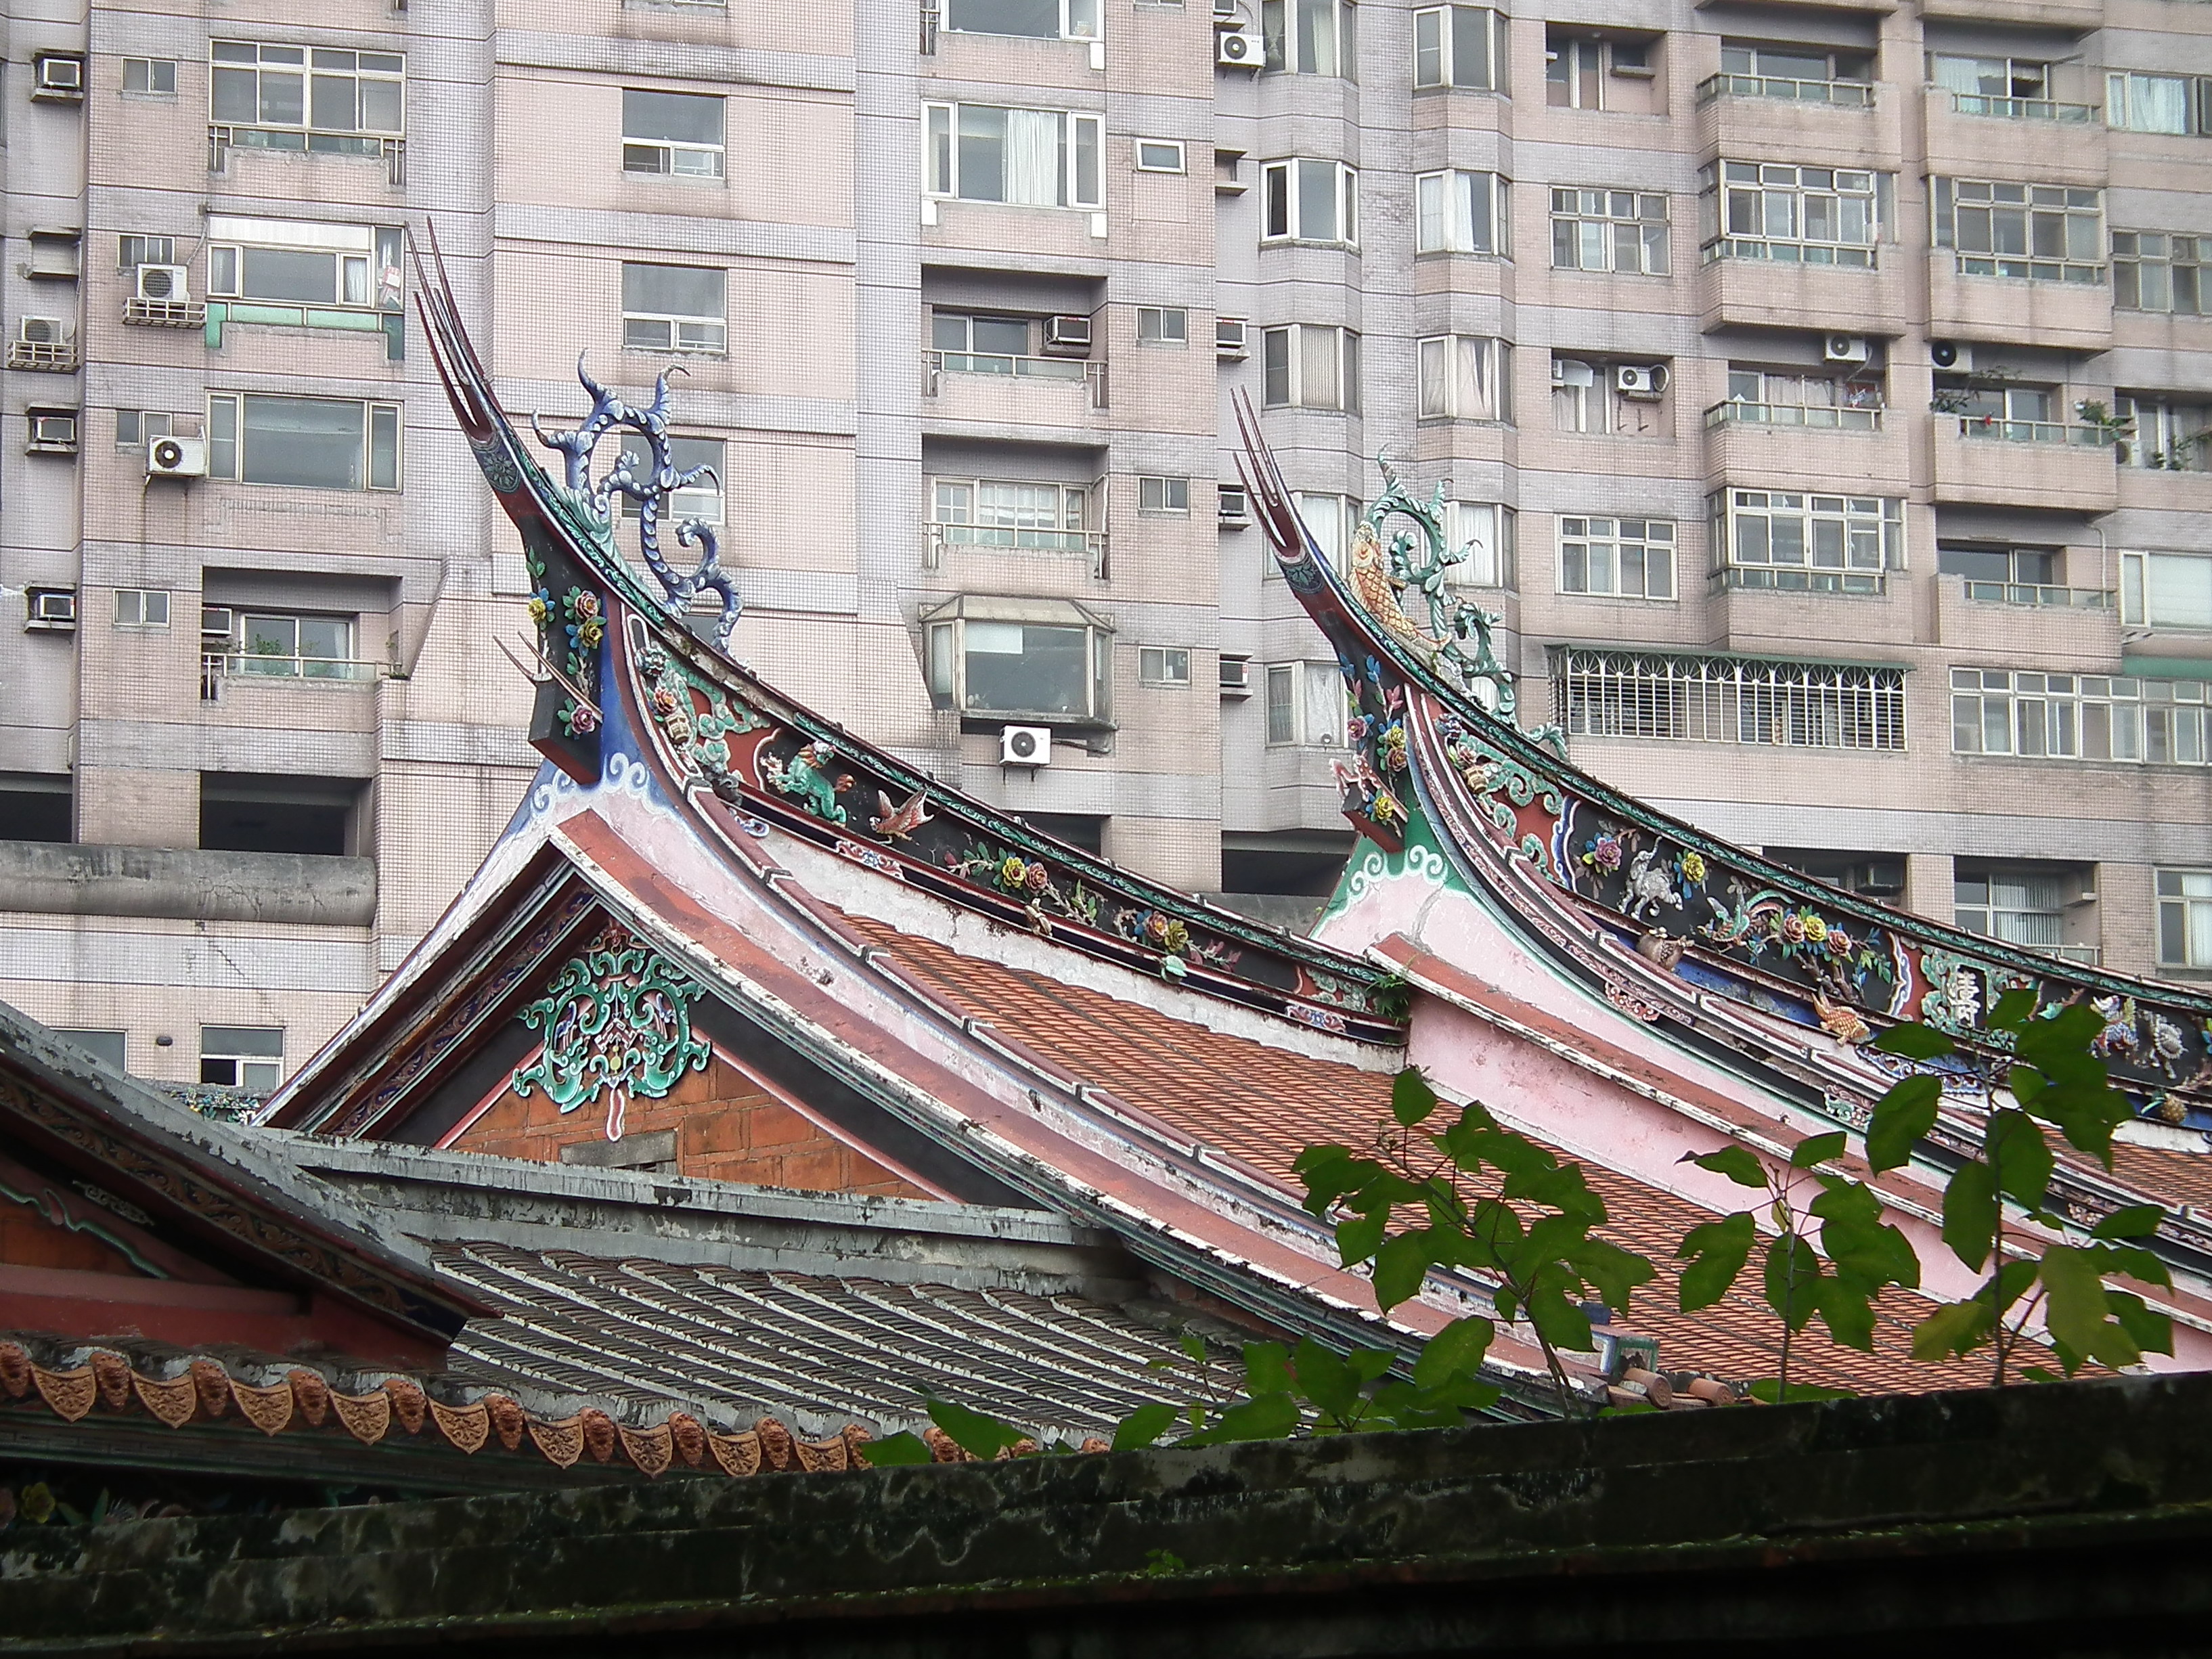 林家三落大厝燕尾脊飾_The_Swallow-tail-shaped_Decoration_on_the_Roof_Ridge_of_the_Lin_Family_Mansion_-_panoramio